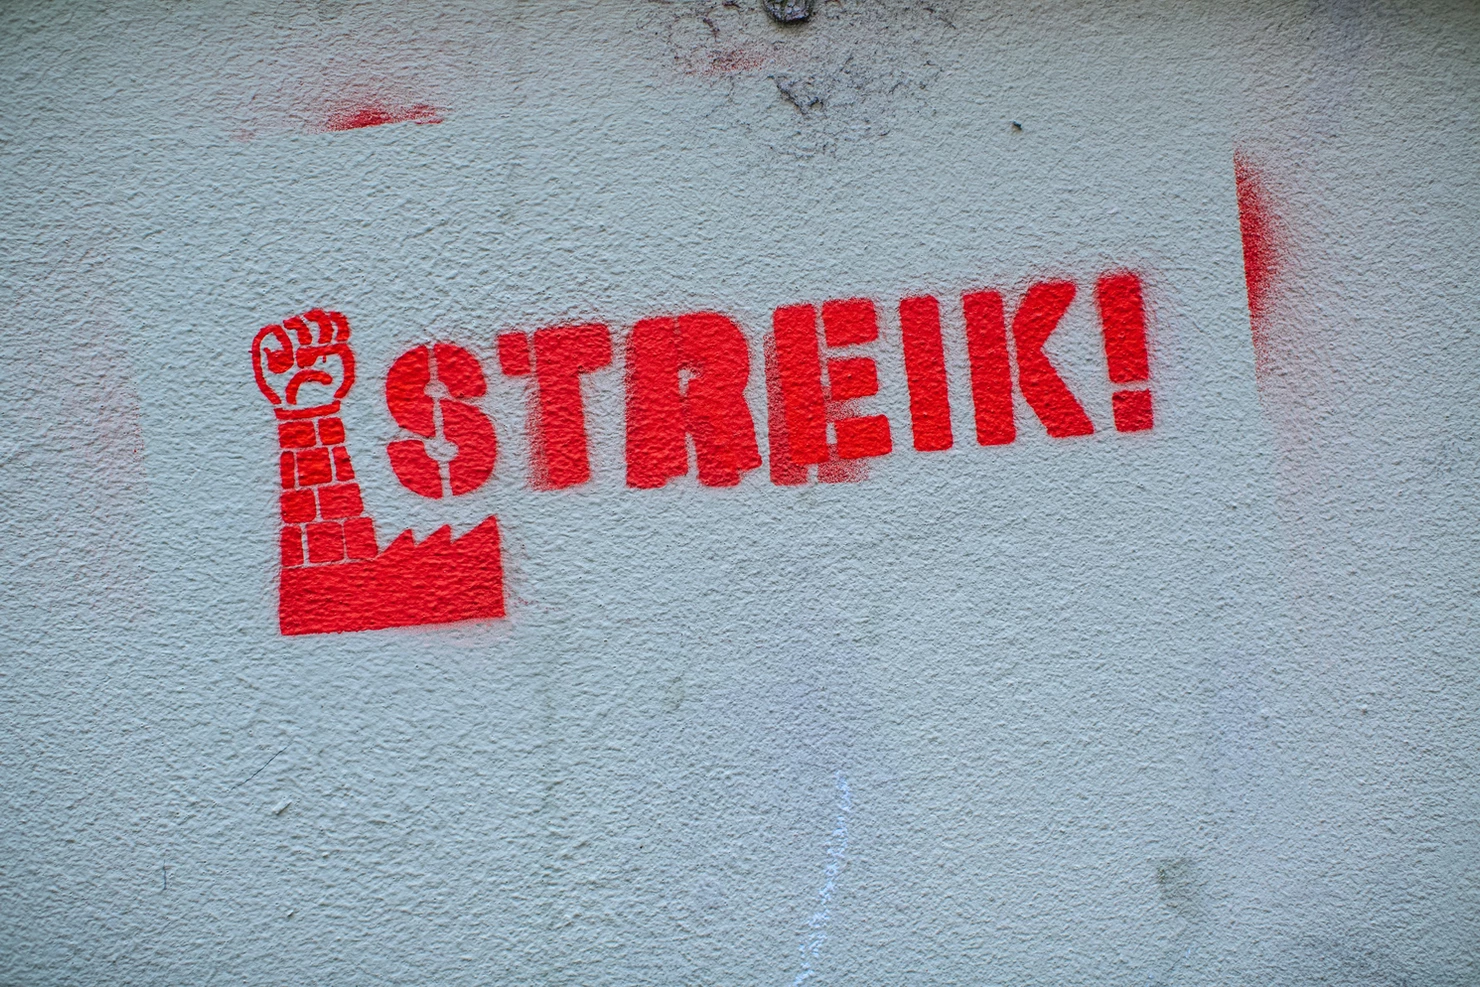 Streik! workers' day